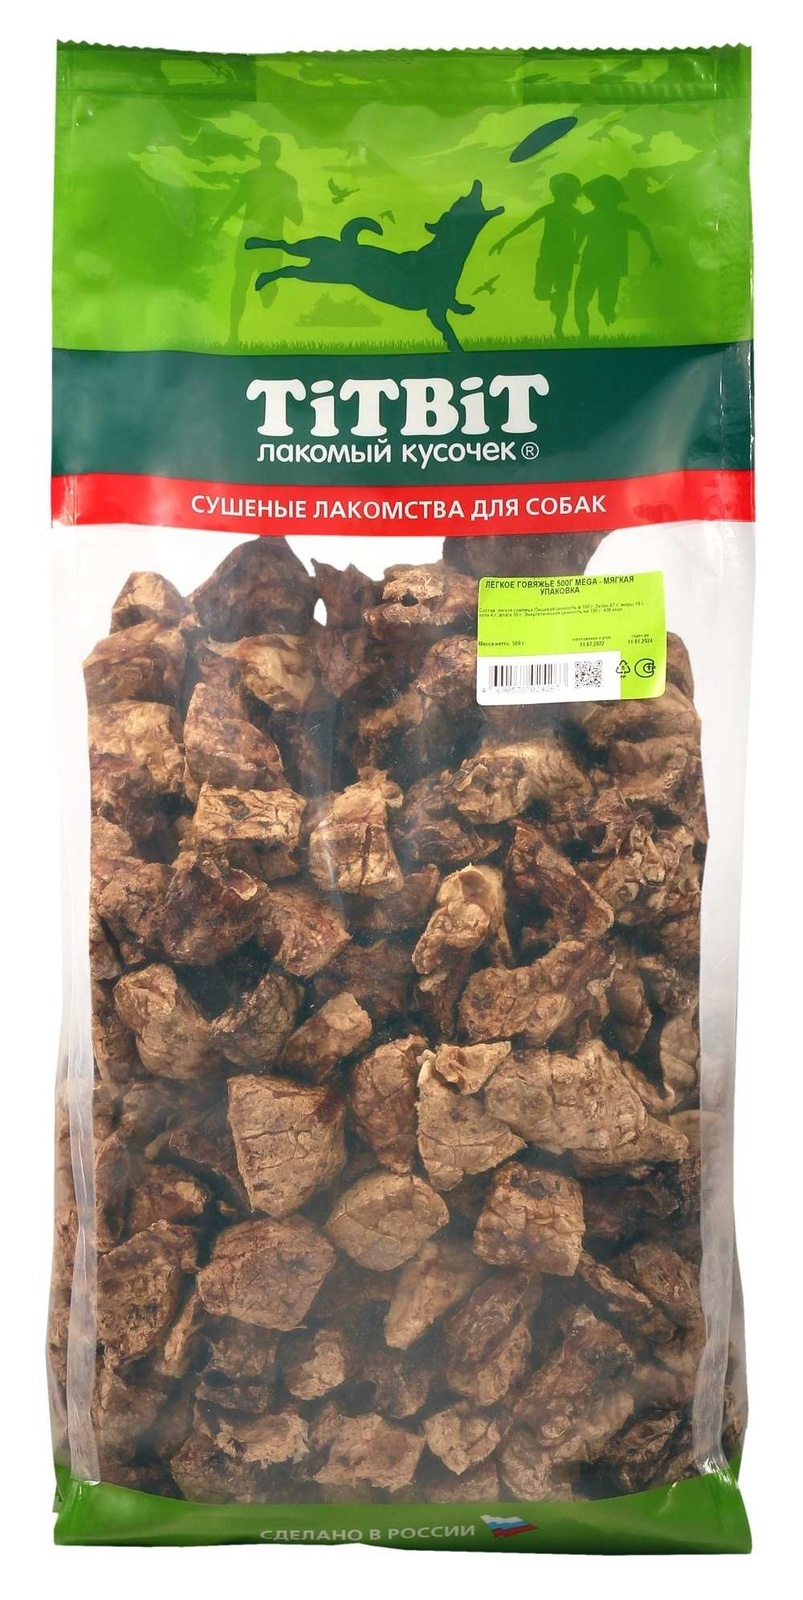 TiTBiT TiTBiT легкое говяжье, мягкая упаковка (500 г) легкое говяжье titbit mega упаковка 500 г